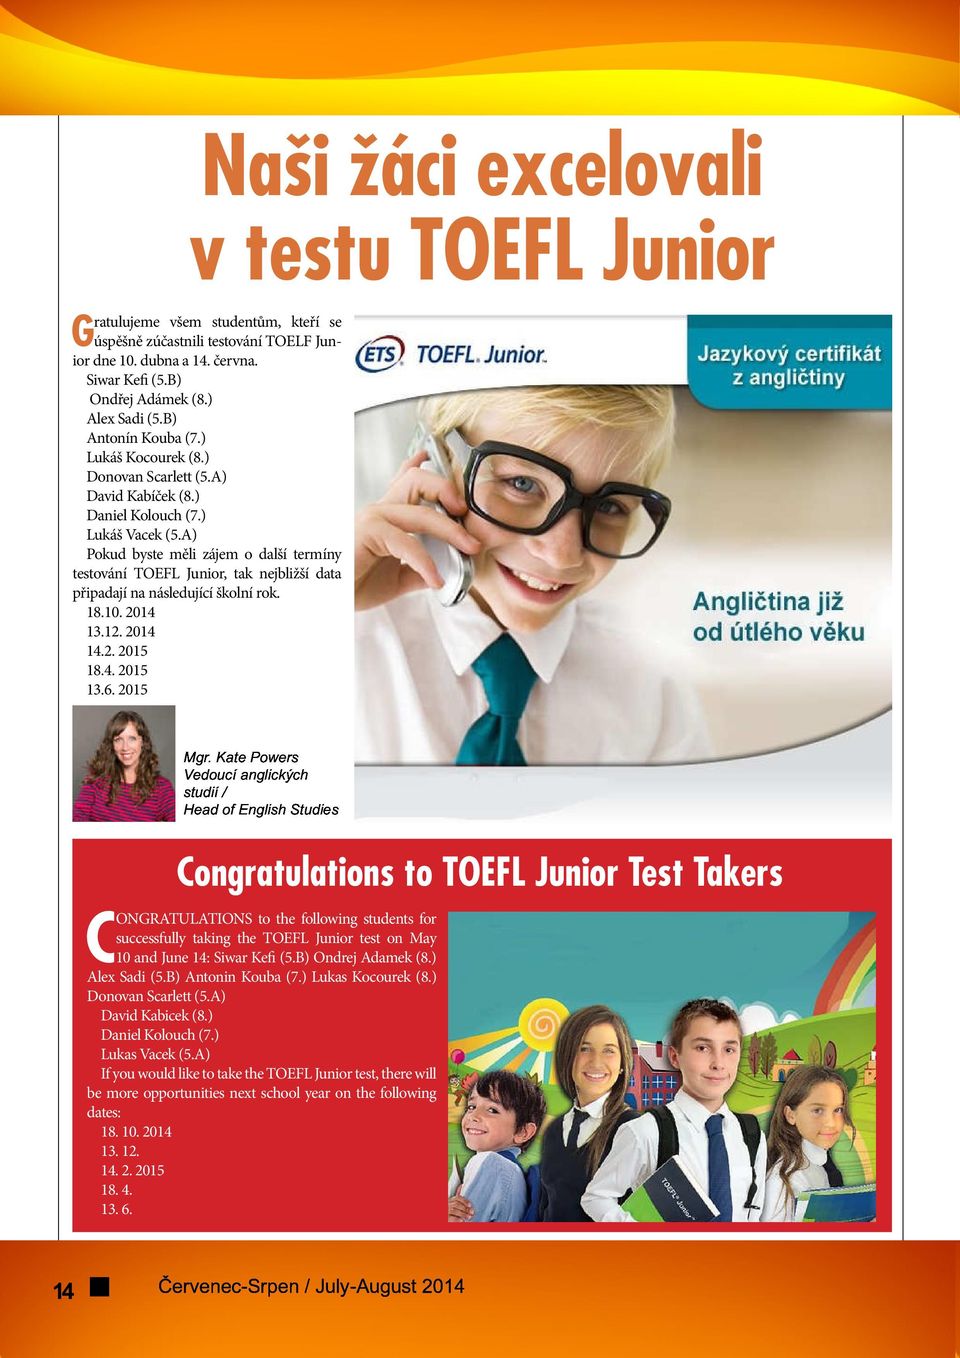 A) Pokud byste měli zájem o další termíny testování TOEFL Junior, tak nejbližší data připadají na následující školní rok. 18.10. 2014 13.12. 2014 ØÓÛÚàÝä 14.2. 2015 åôòúöæçþîßàøãèóûúàôø ÙÔÚÖÛÜÝÒÞÎßàÜáâÜã 18.